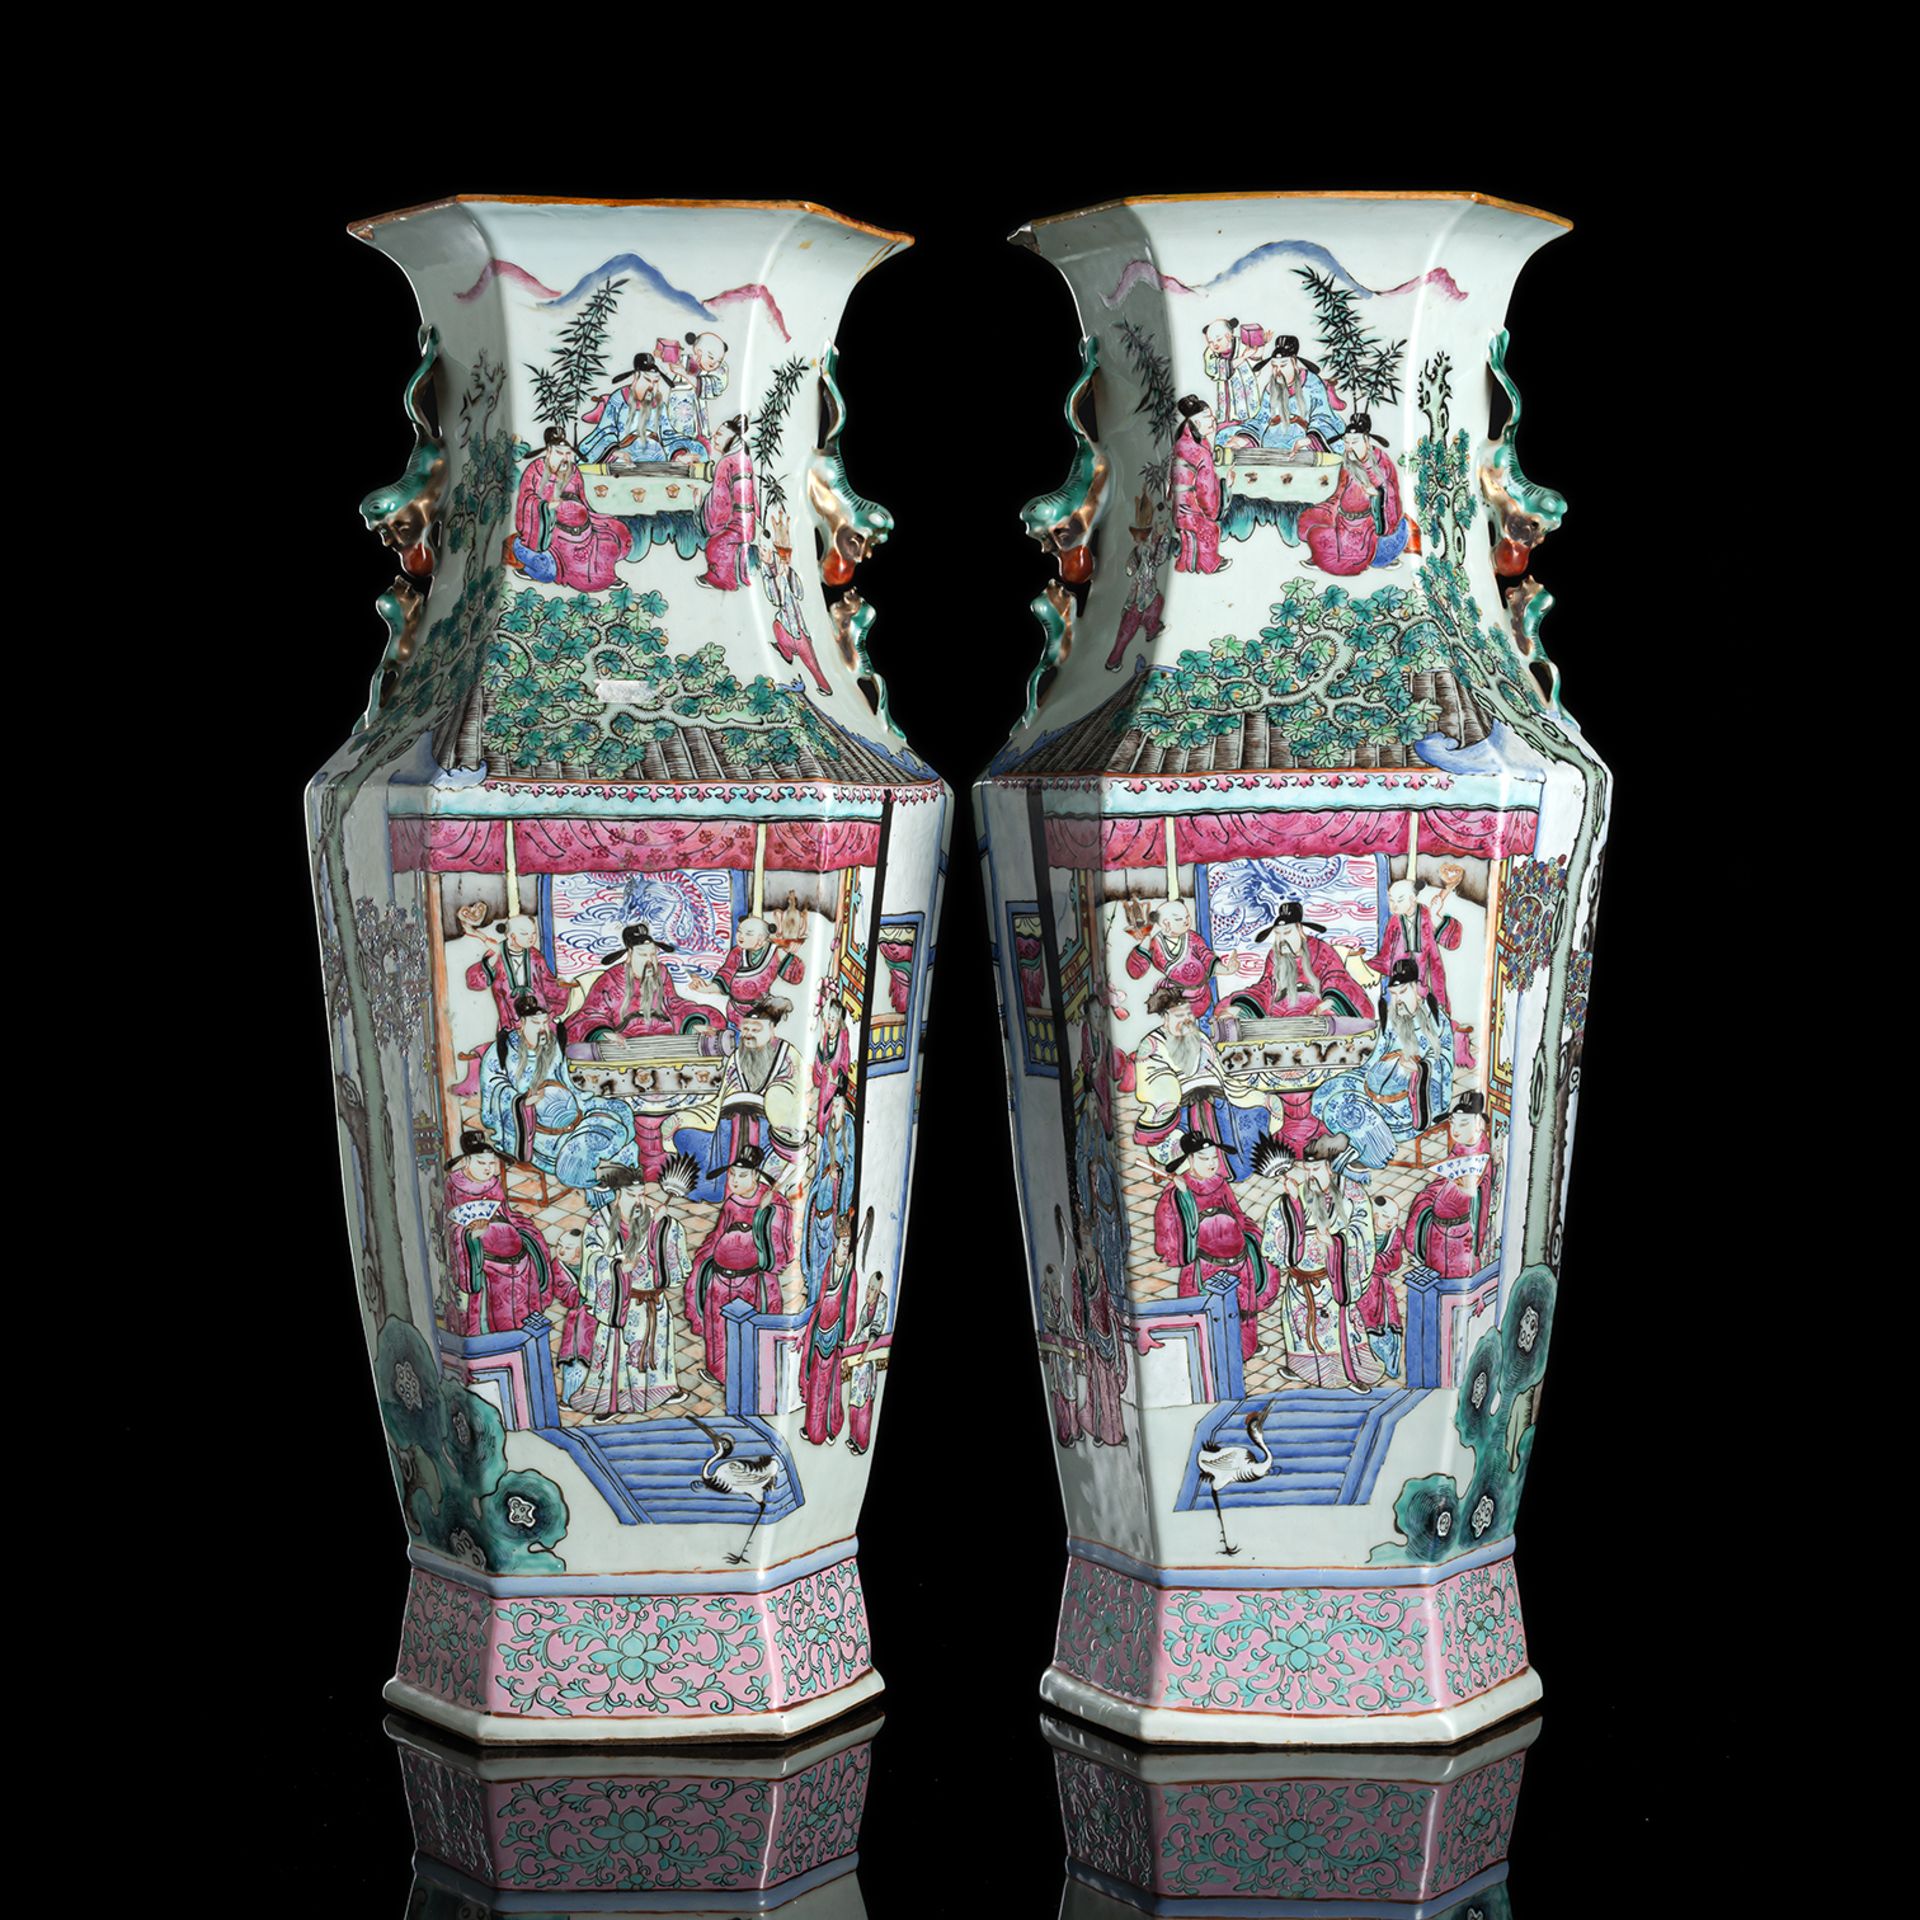 Paar hexagonale Vasen aus Porzellan mit 'Famille rose'-Figurendekor und Handhaben in Form von Fo-Lö